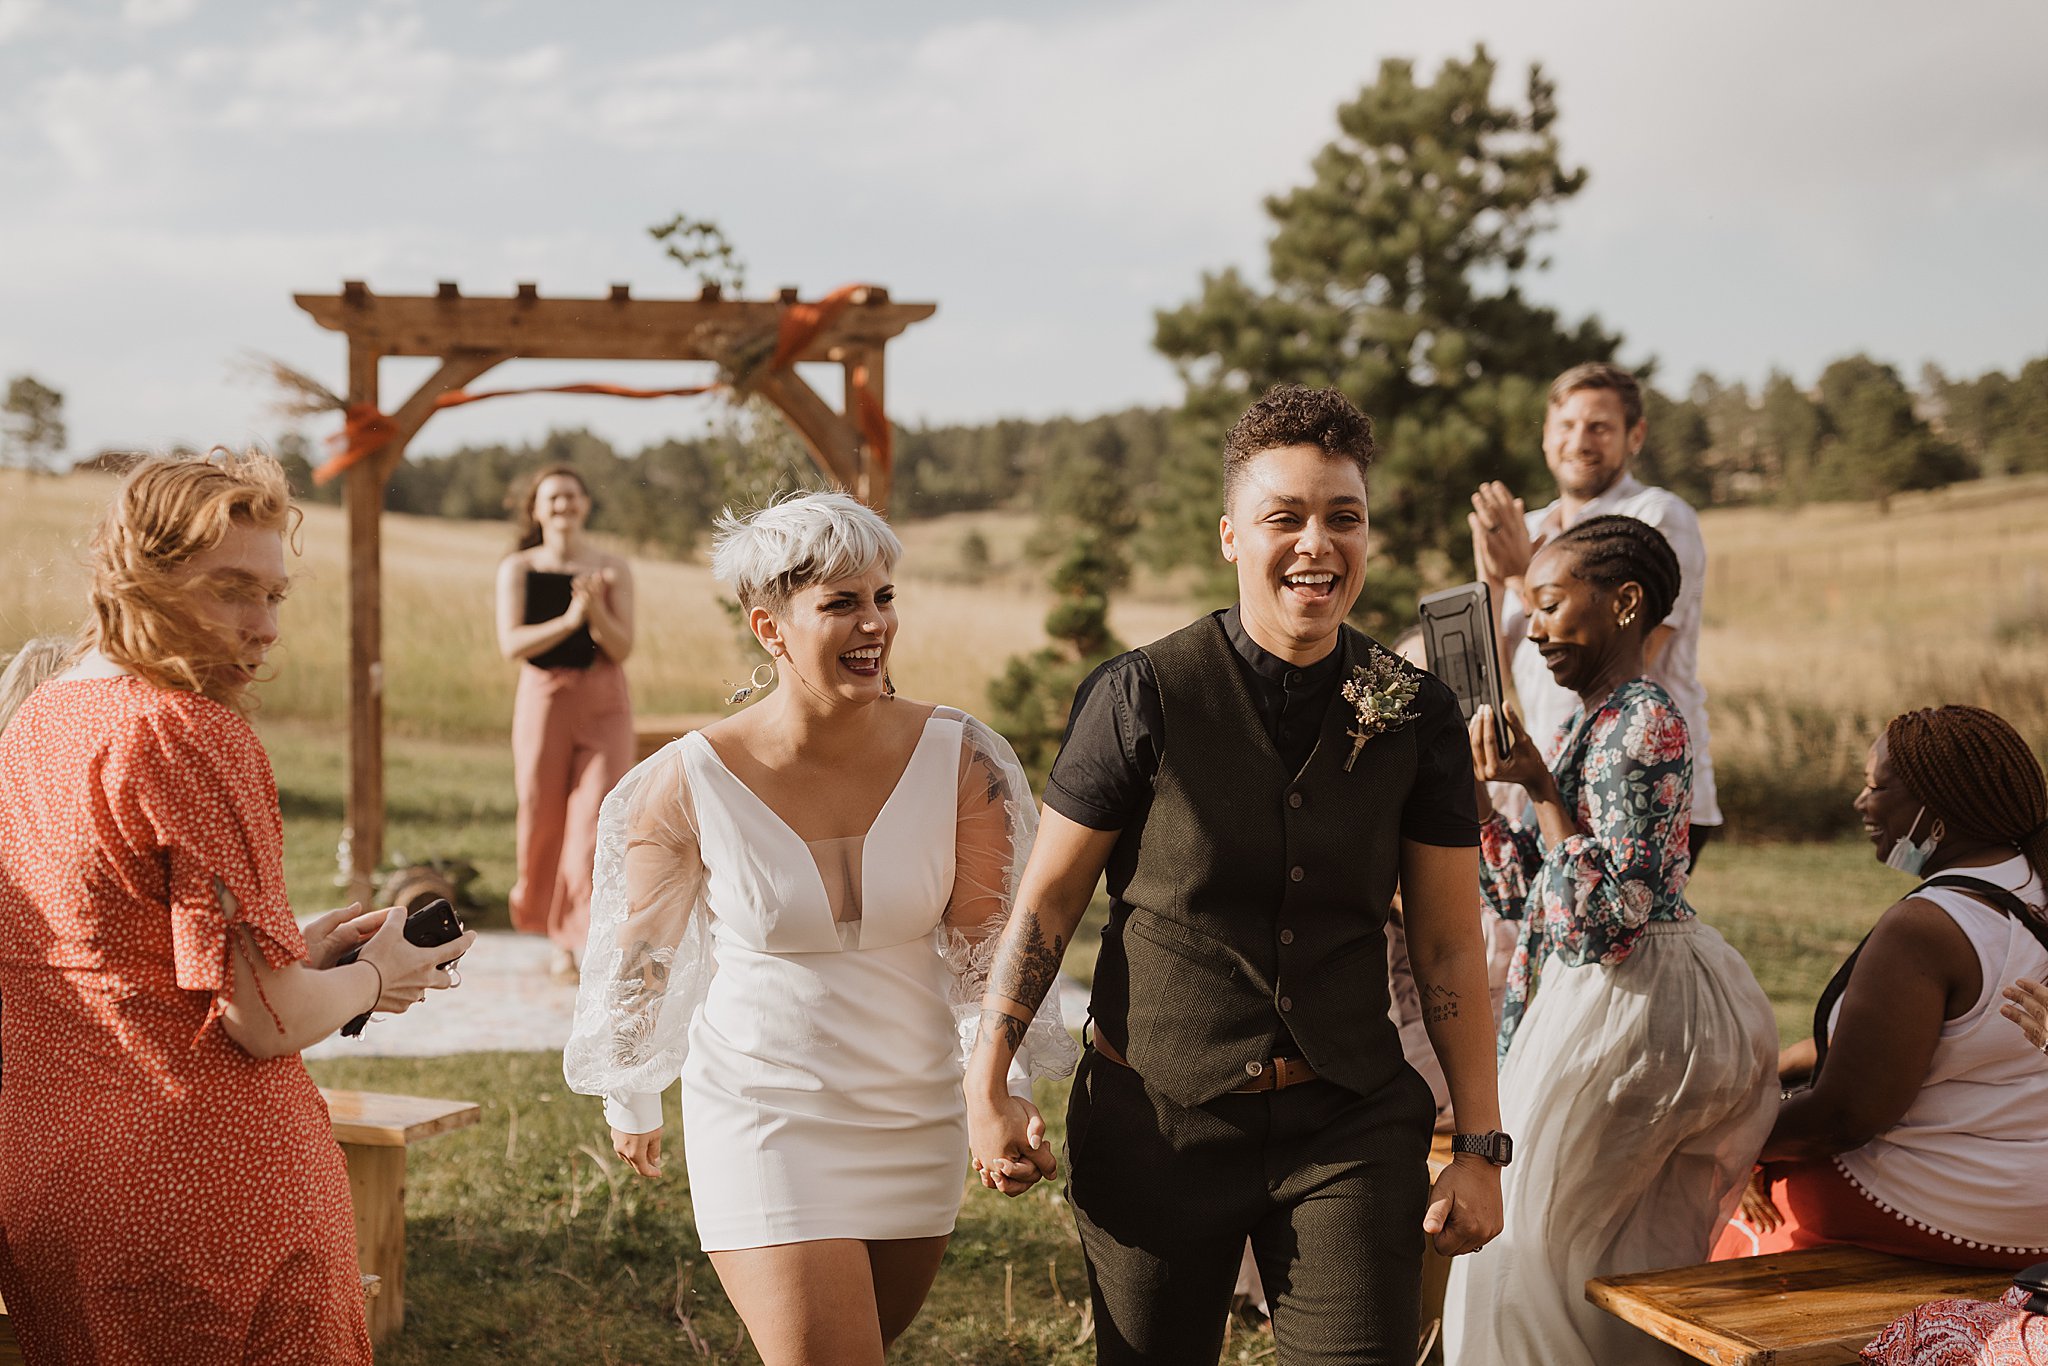 Colorado Springs Wedding